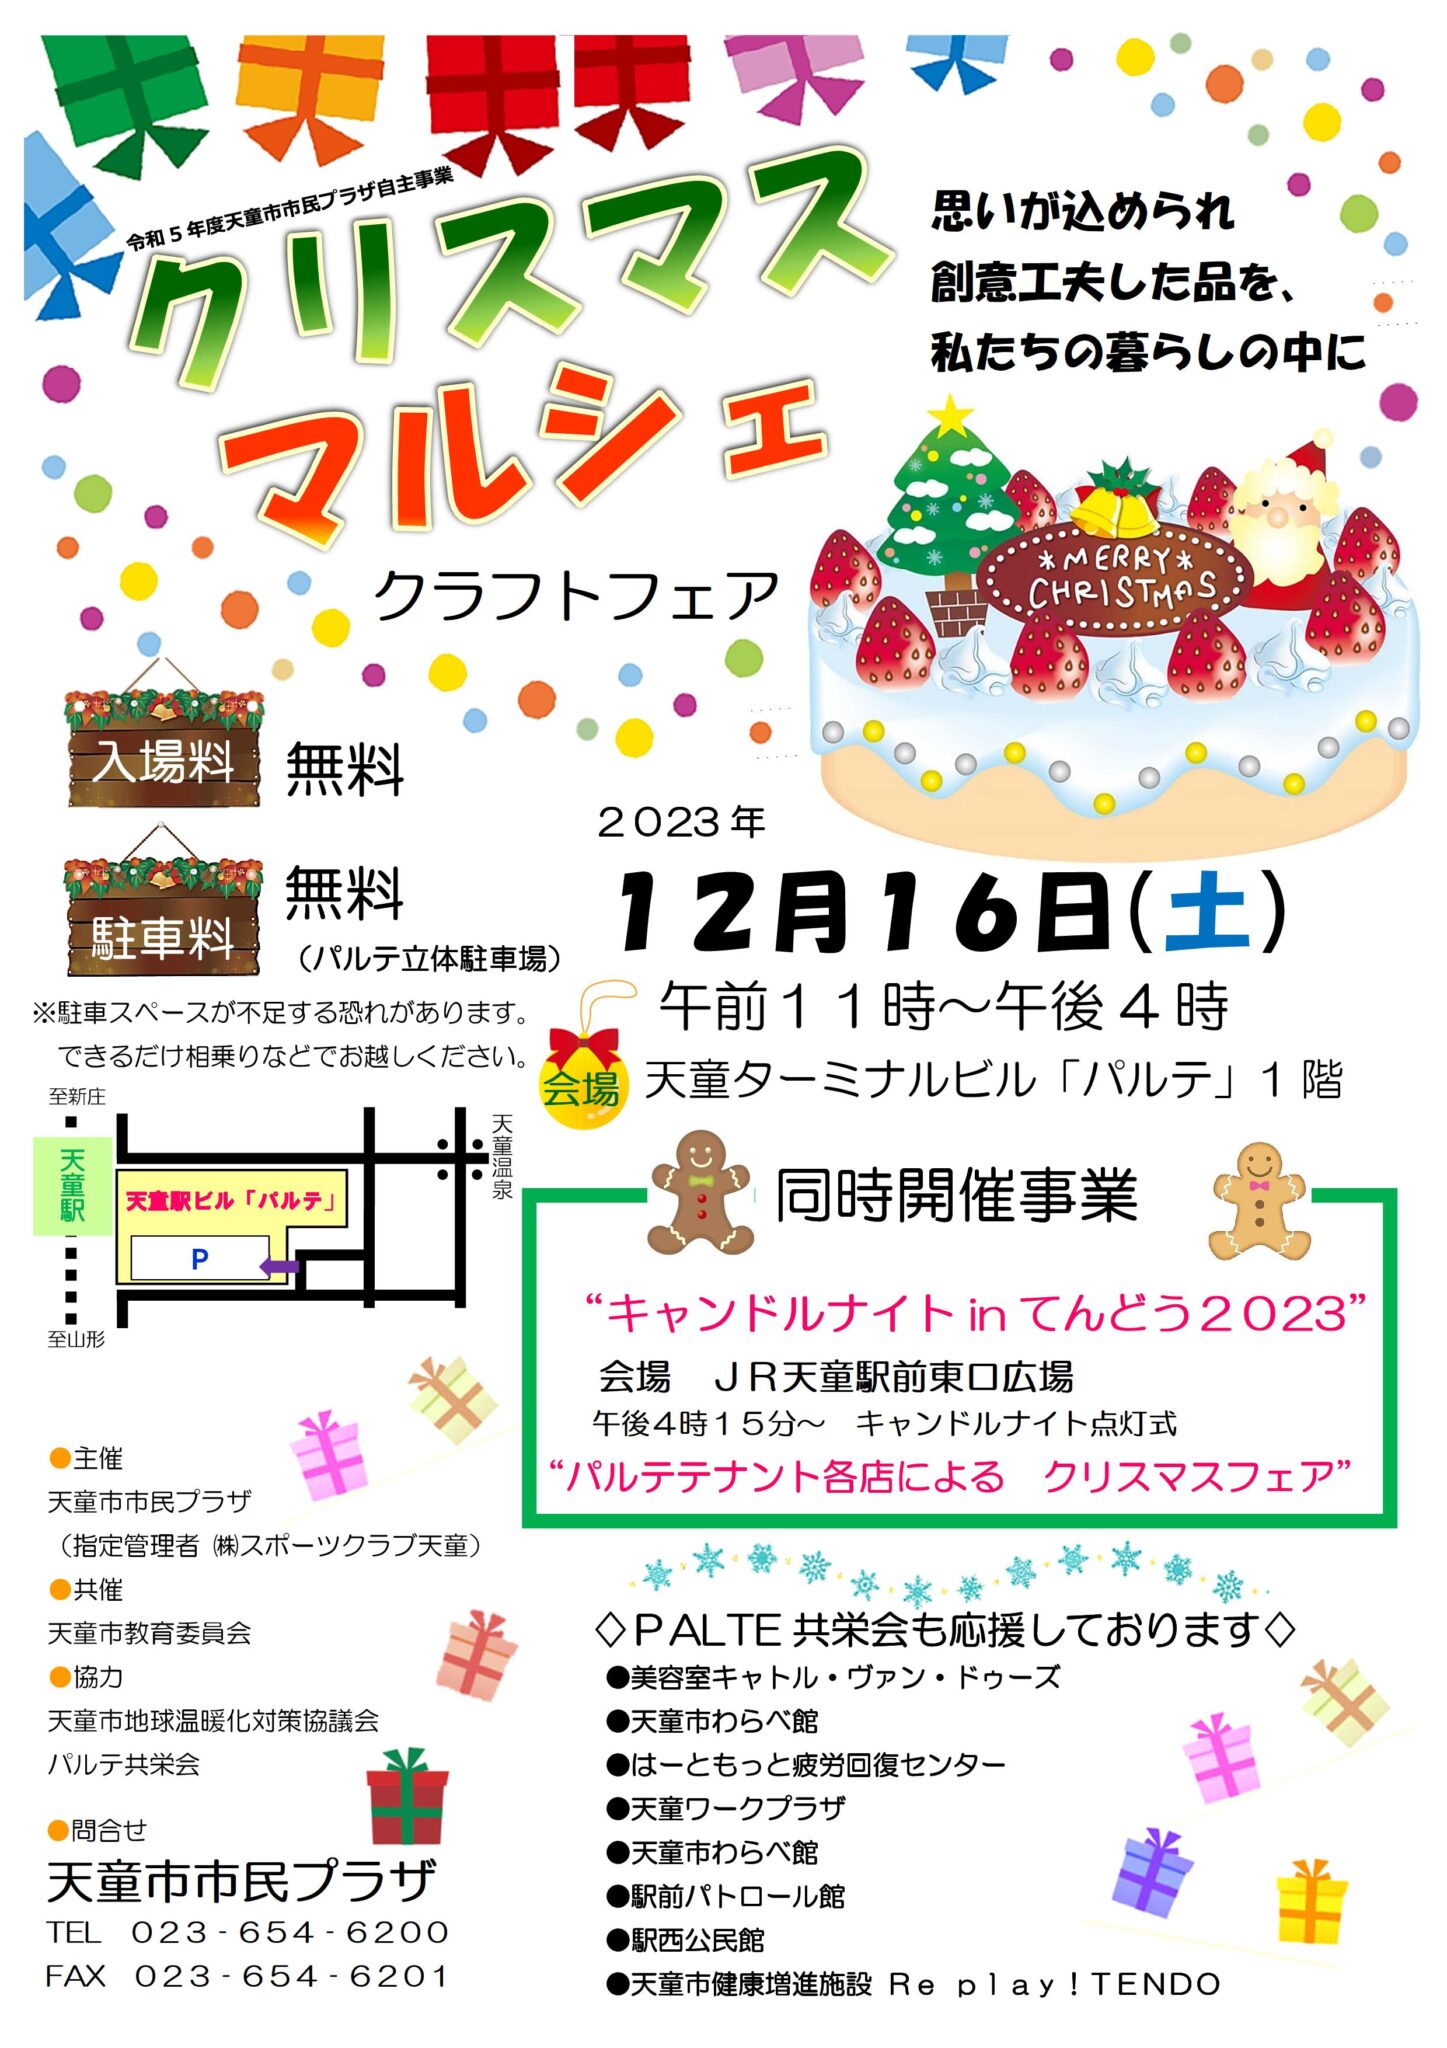 【山形イベント情報12/16】クリスマスマルシェ開催